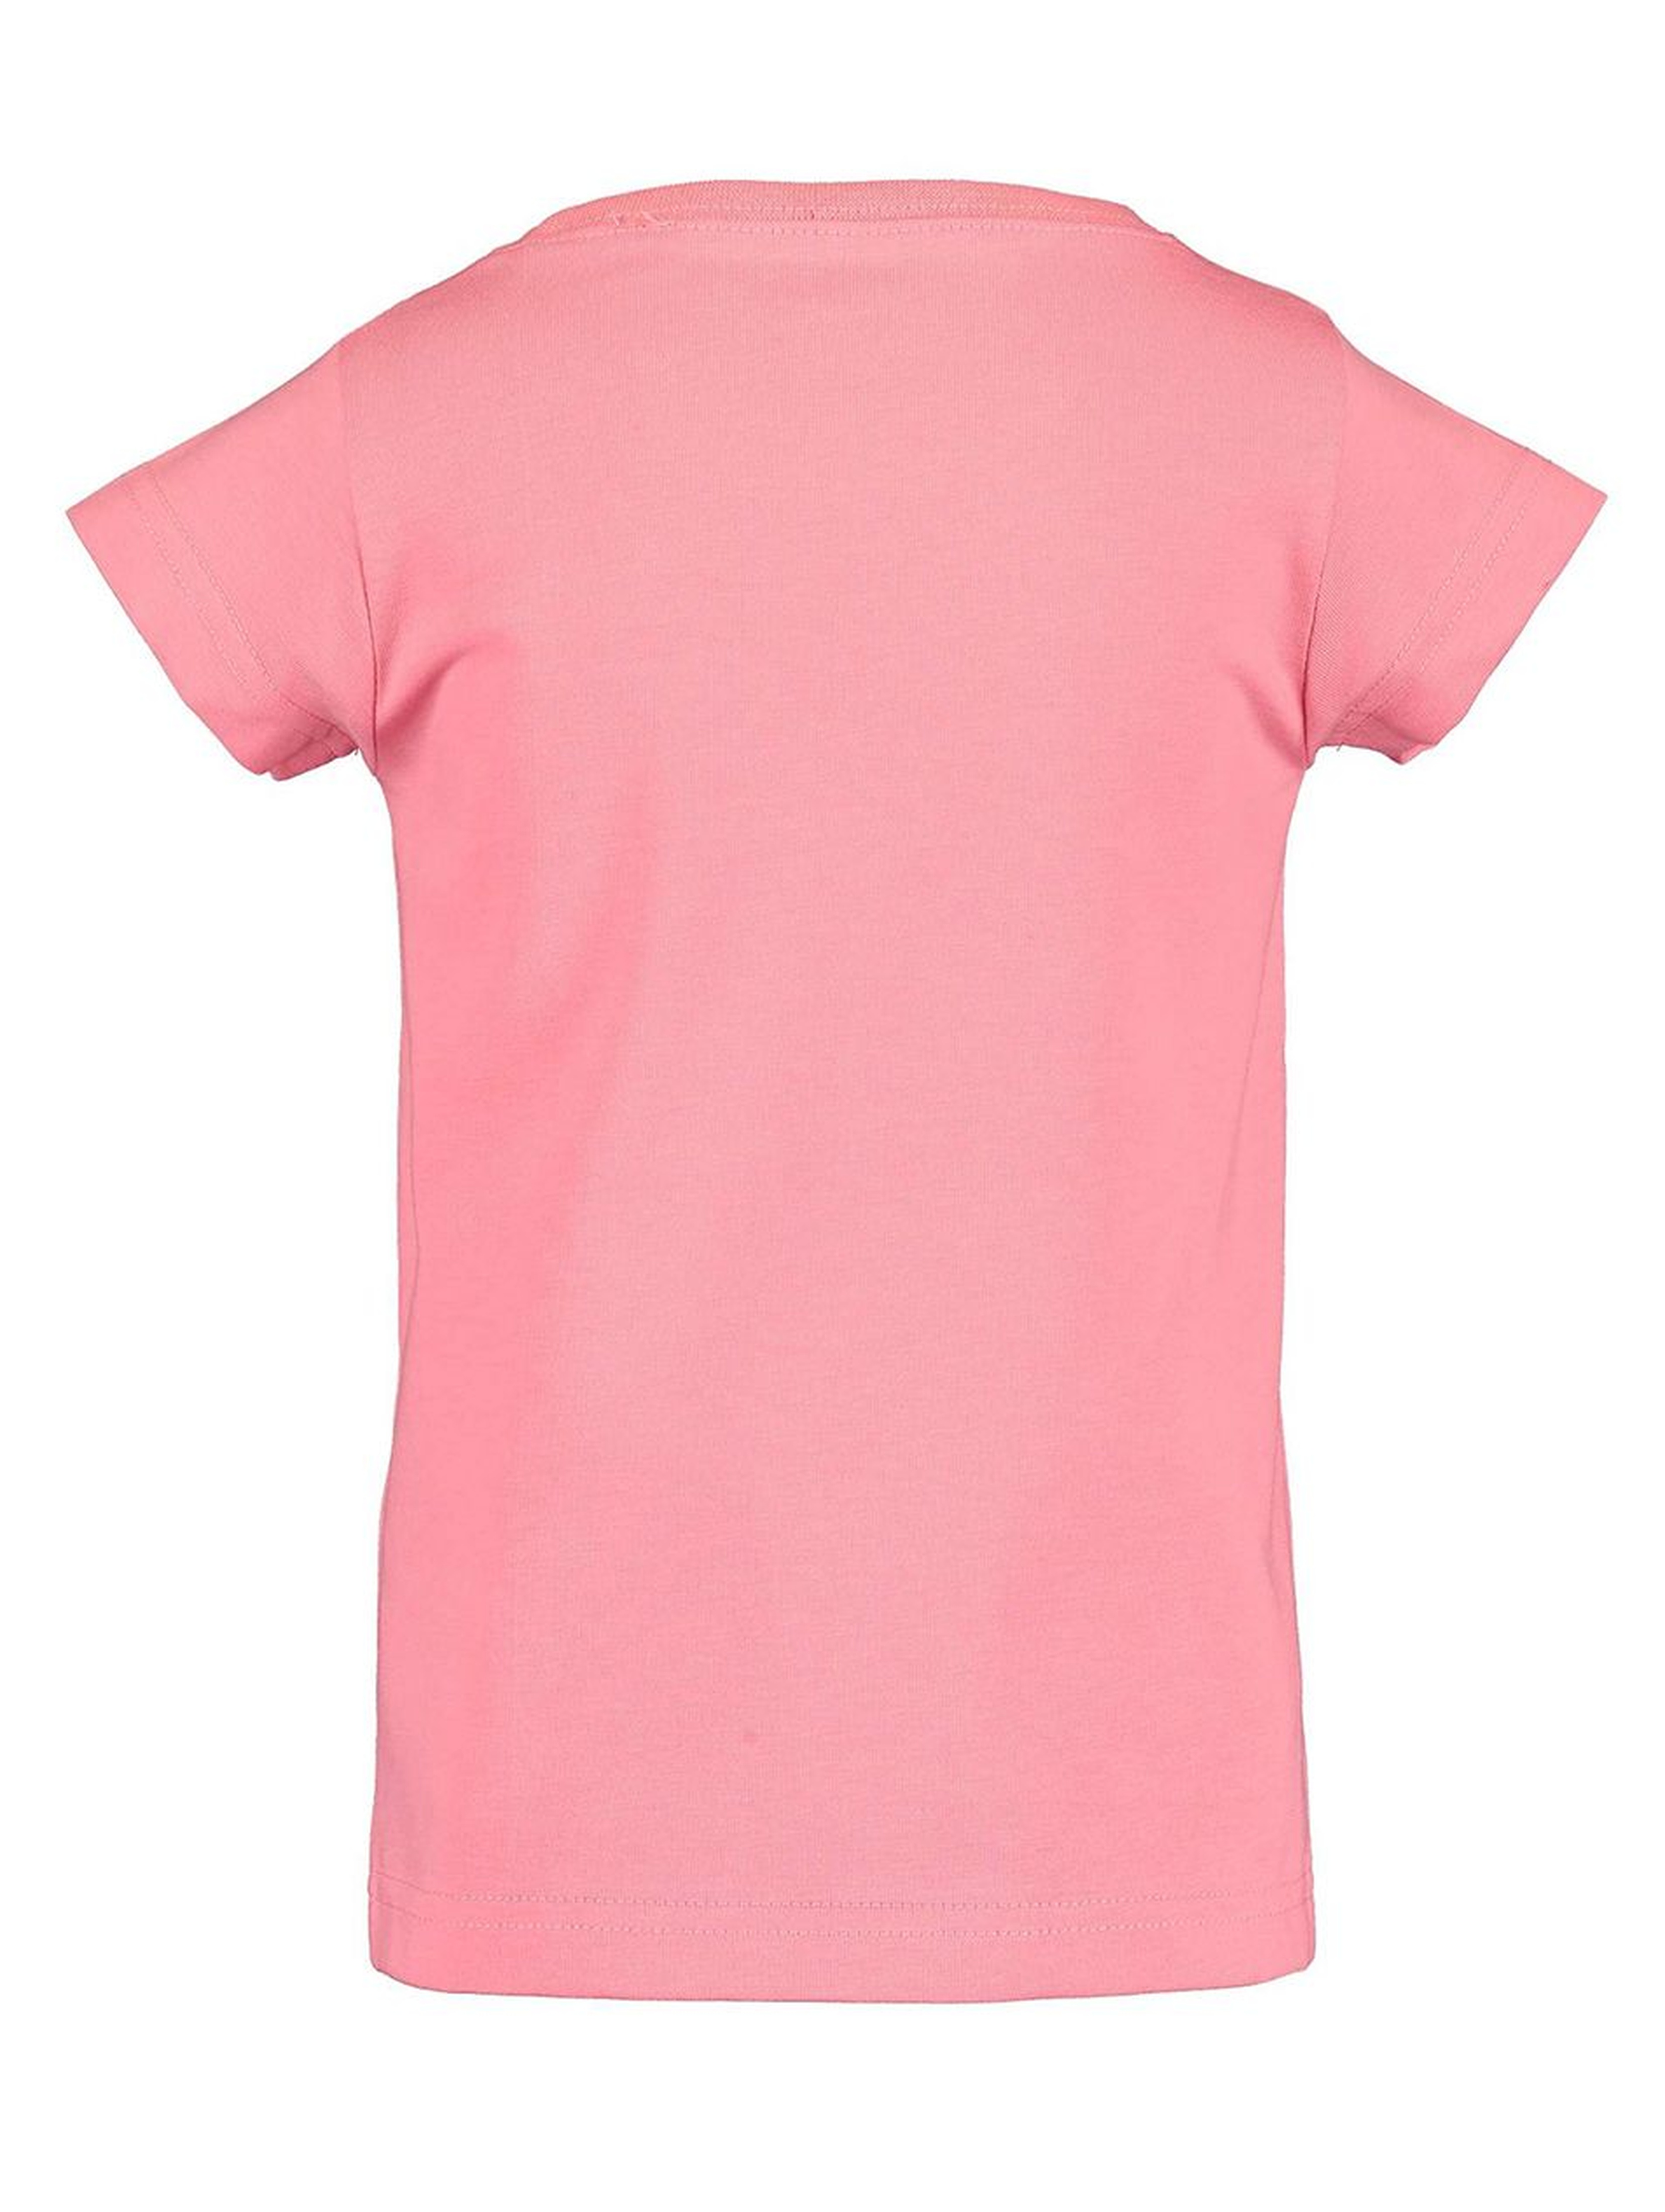 Koszulka dziewczęca różowa z kolorowym nadrukiem